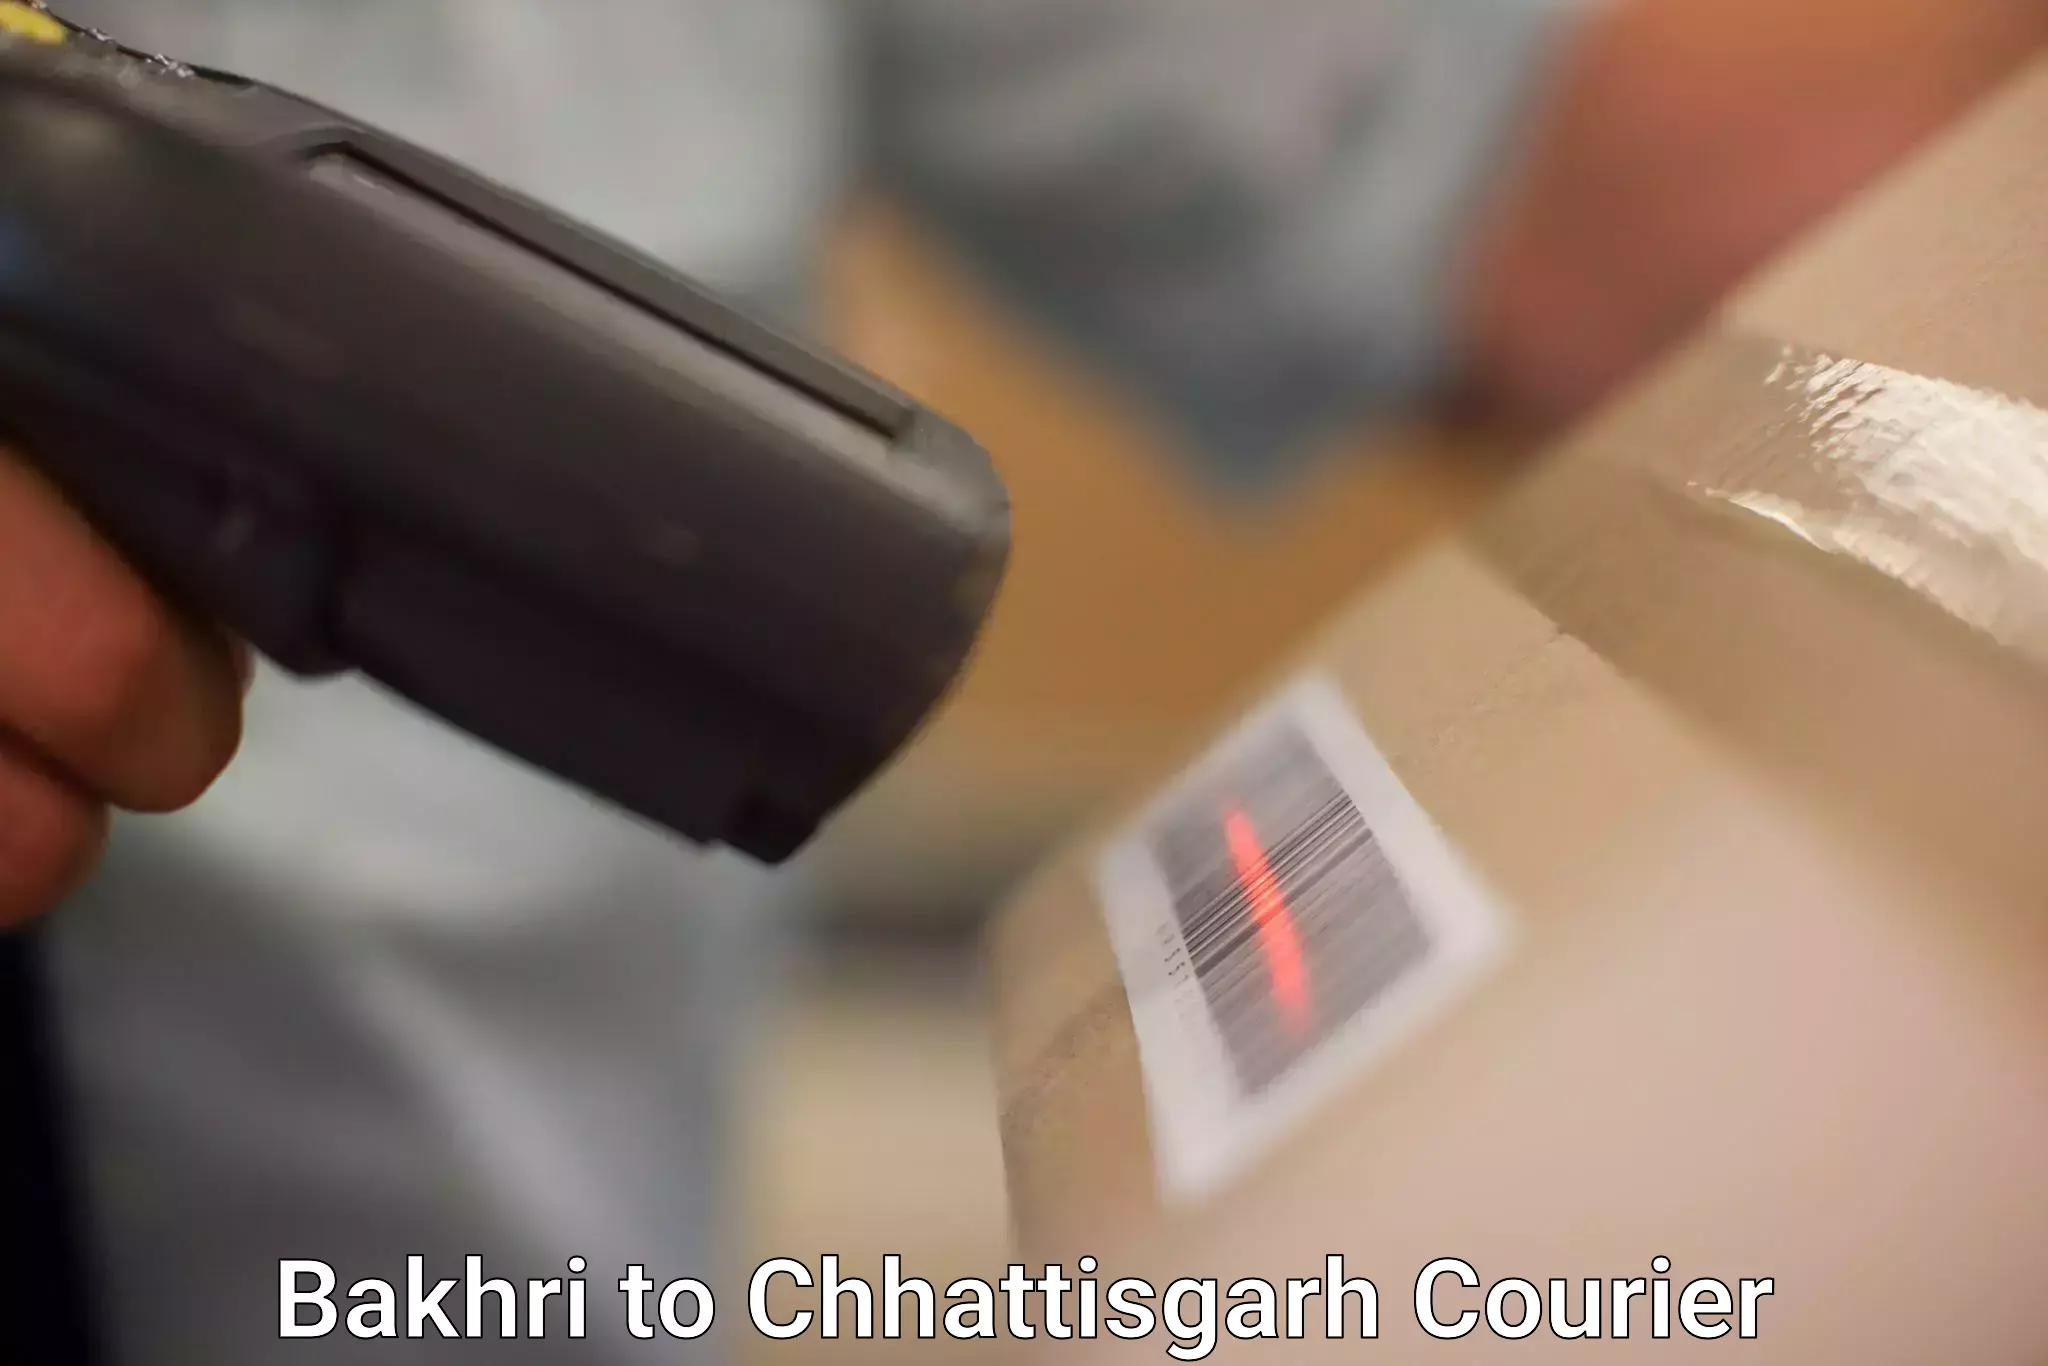 Courier rate comparison Bakhri to Chhattisgarh